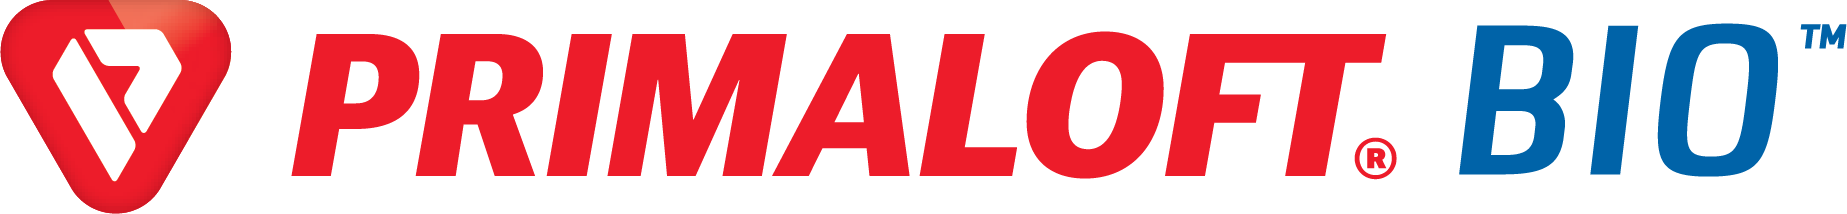 Primaloftbio logo